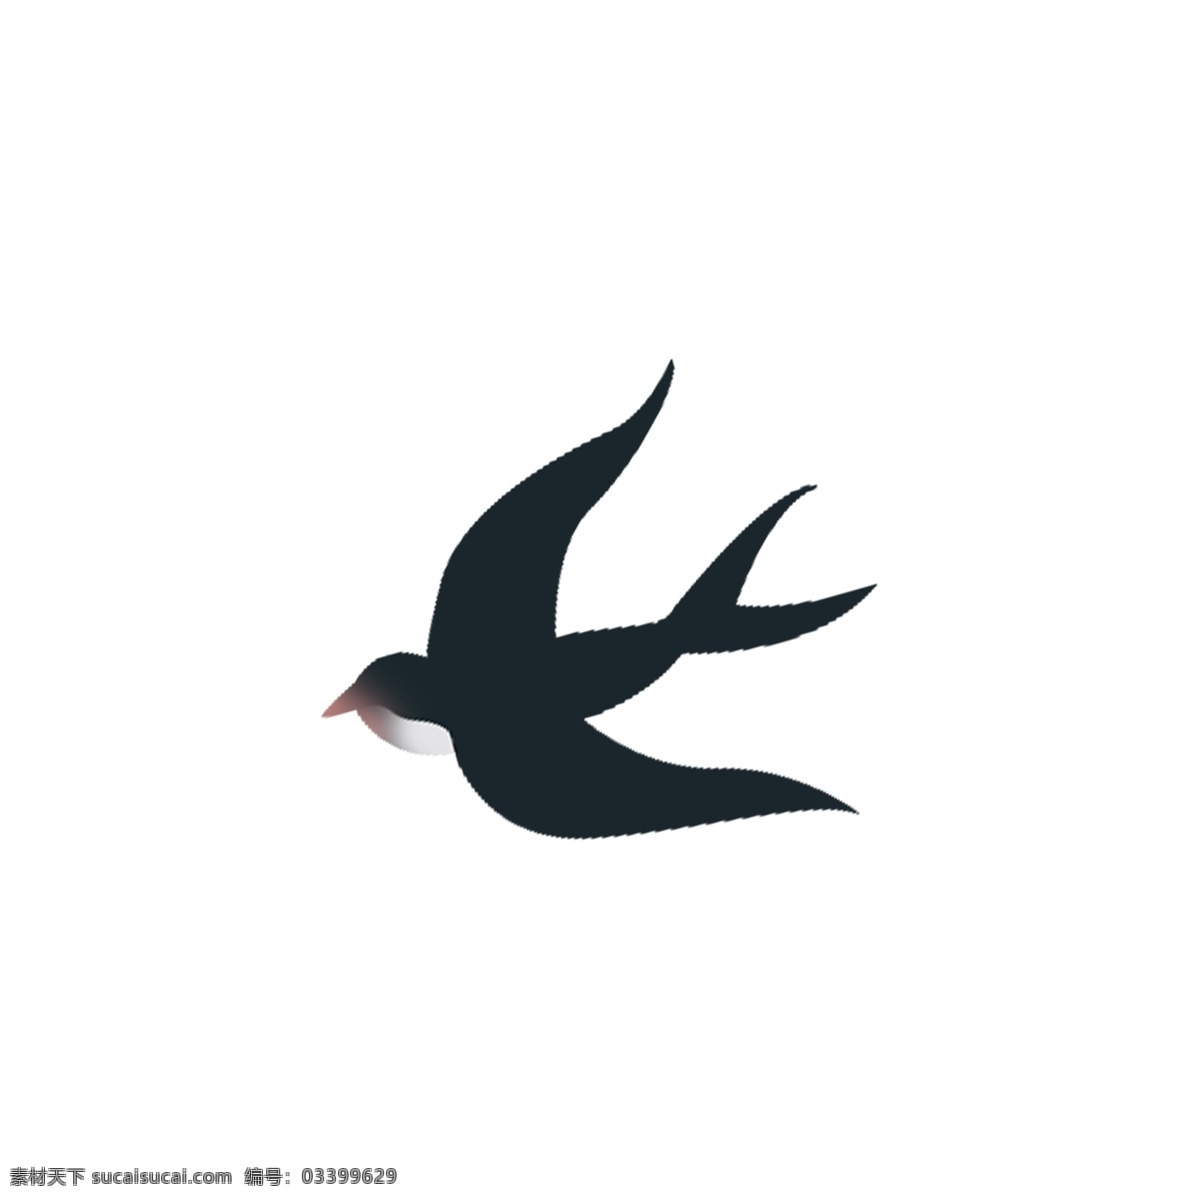 卡通 黑色 小燕子 免 抠 图 动物 飞翔的燕子 卡通动物 动物插画 可爱的燕子 飞翔的鸟儿 免抠图